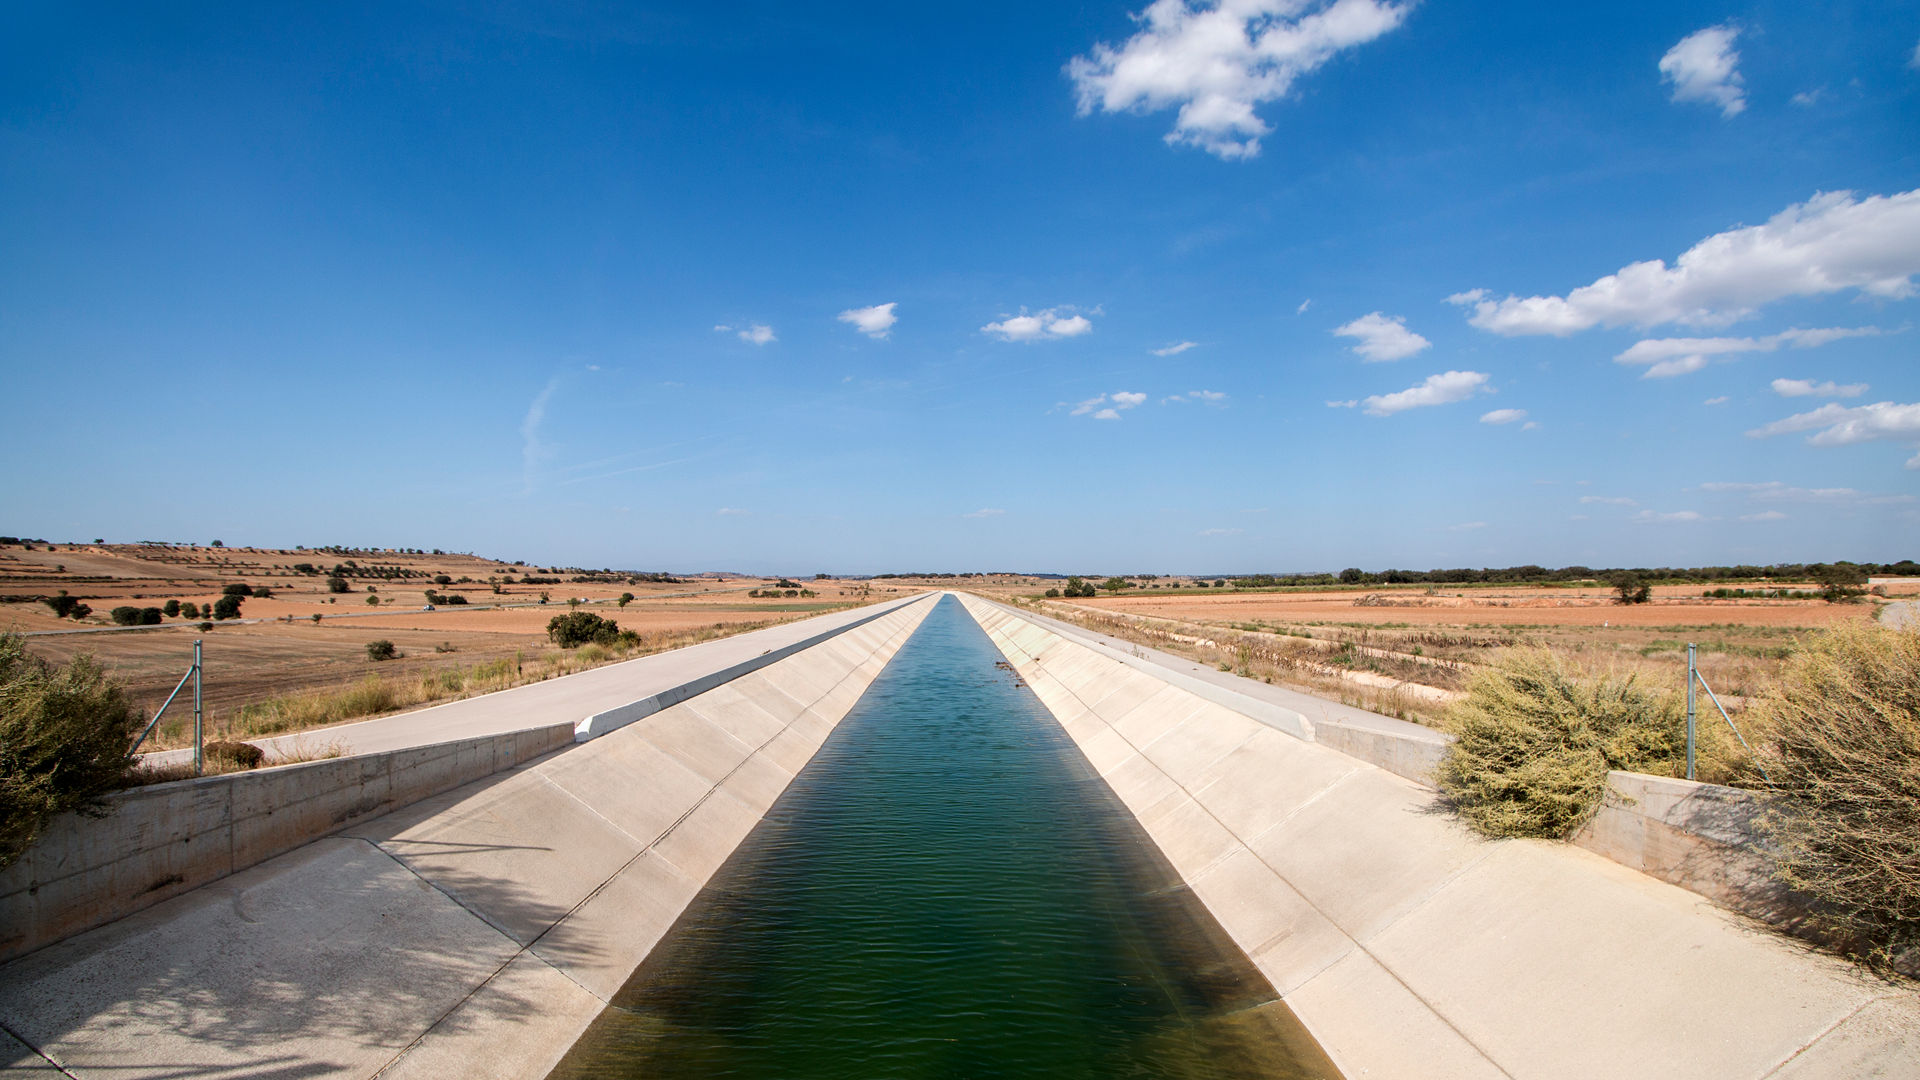 Irrigation canal / manmade waterway